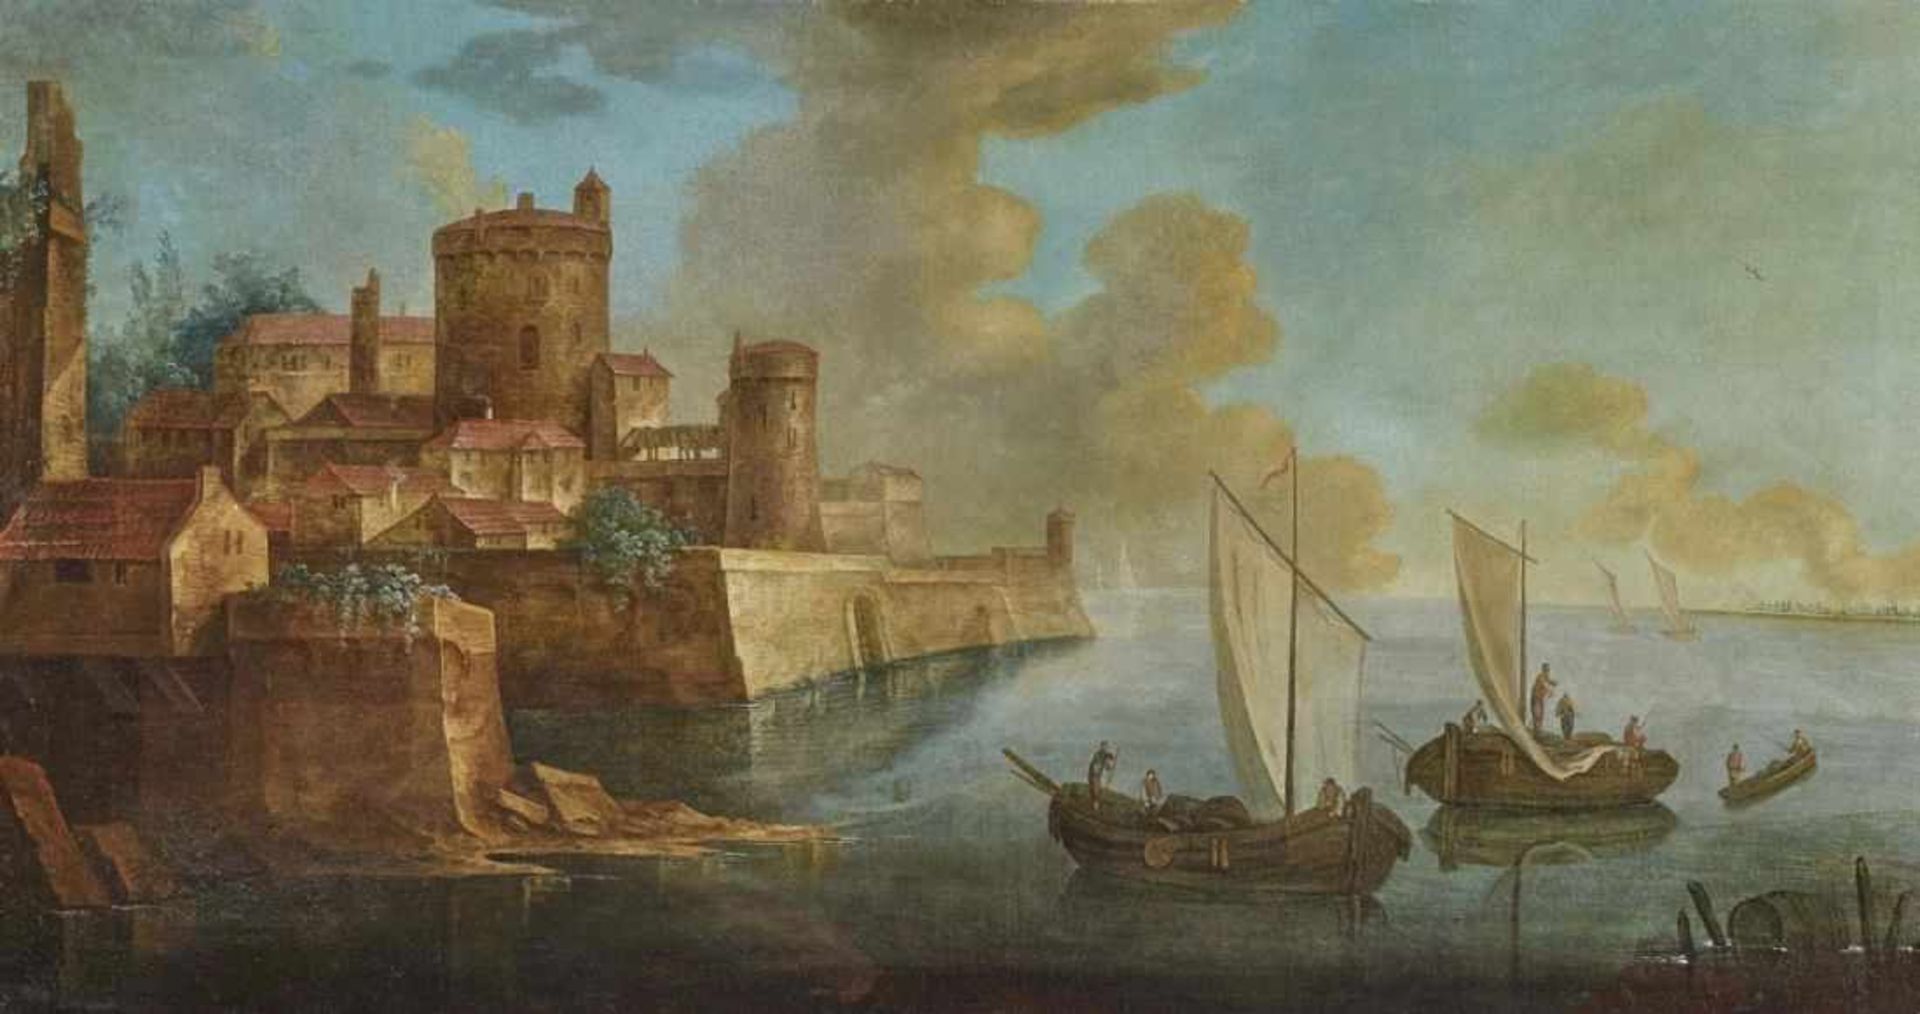 ITALIEN 17./18. Jh. Hafenstadt mit Castello und Schiffen Öl auf Lwd. 90 x 170 cm. Firnis